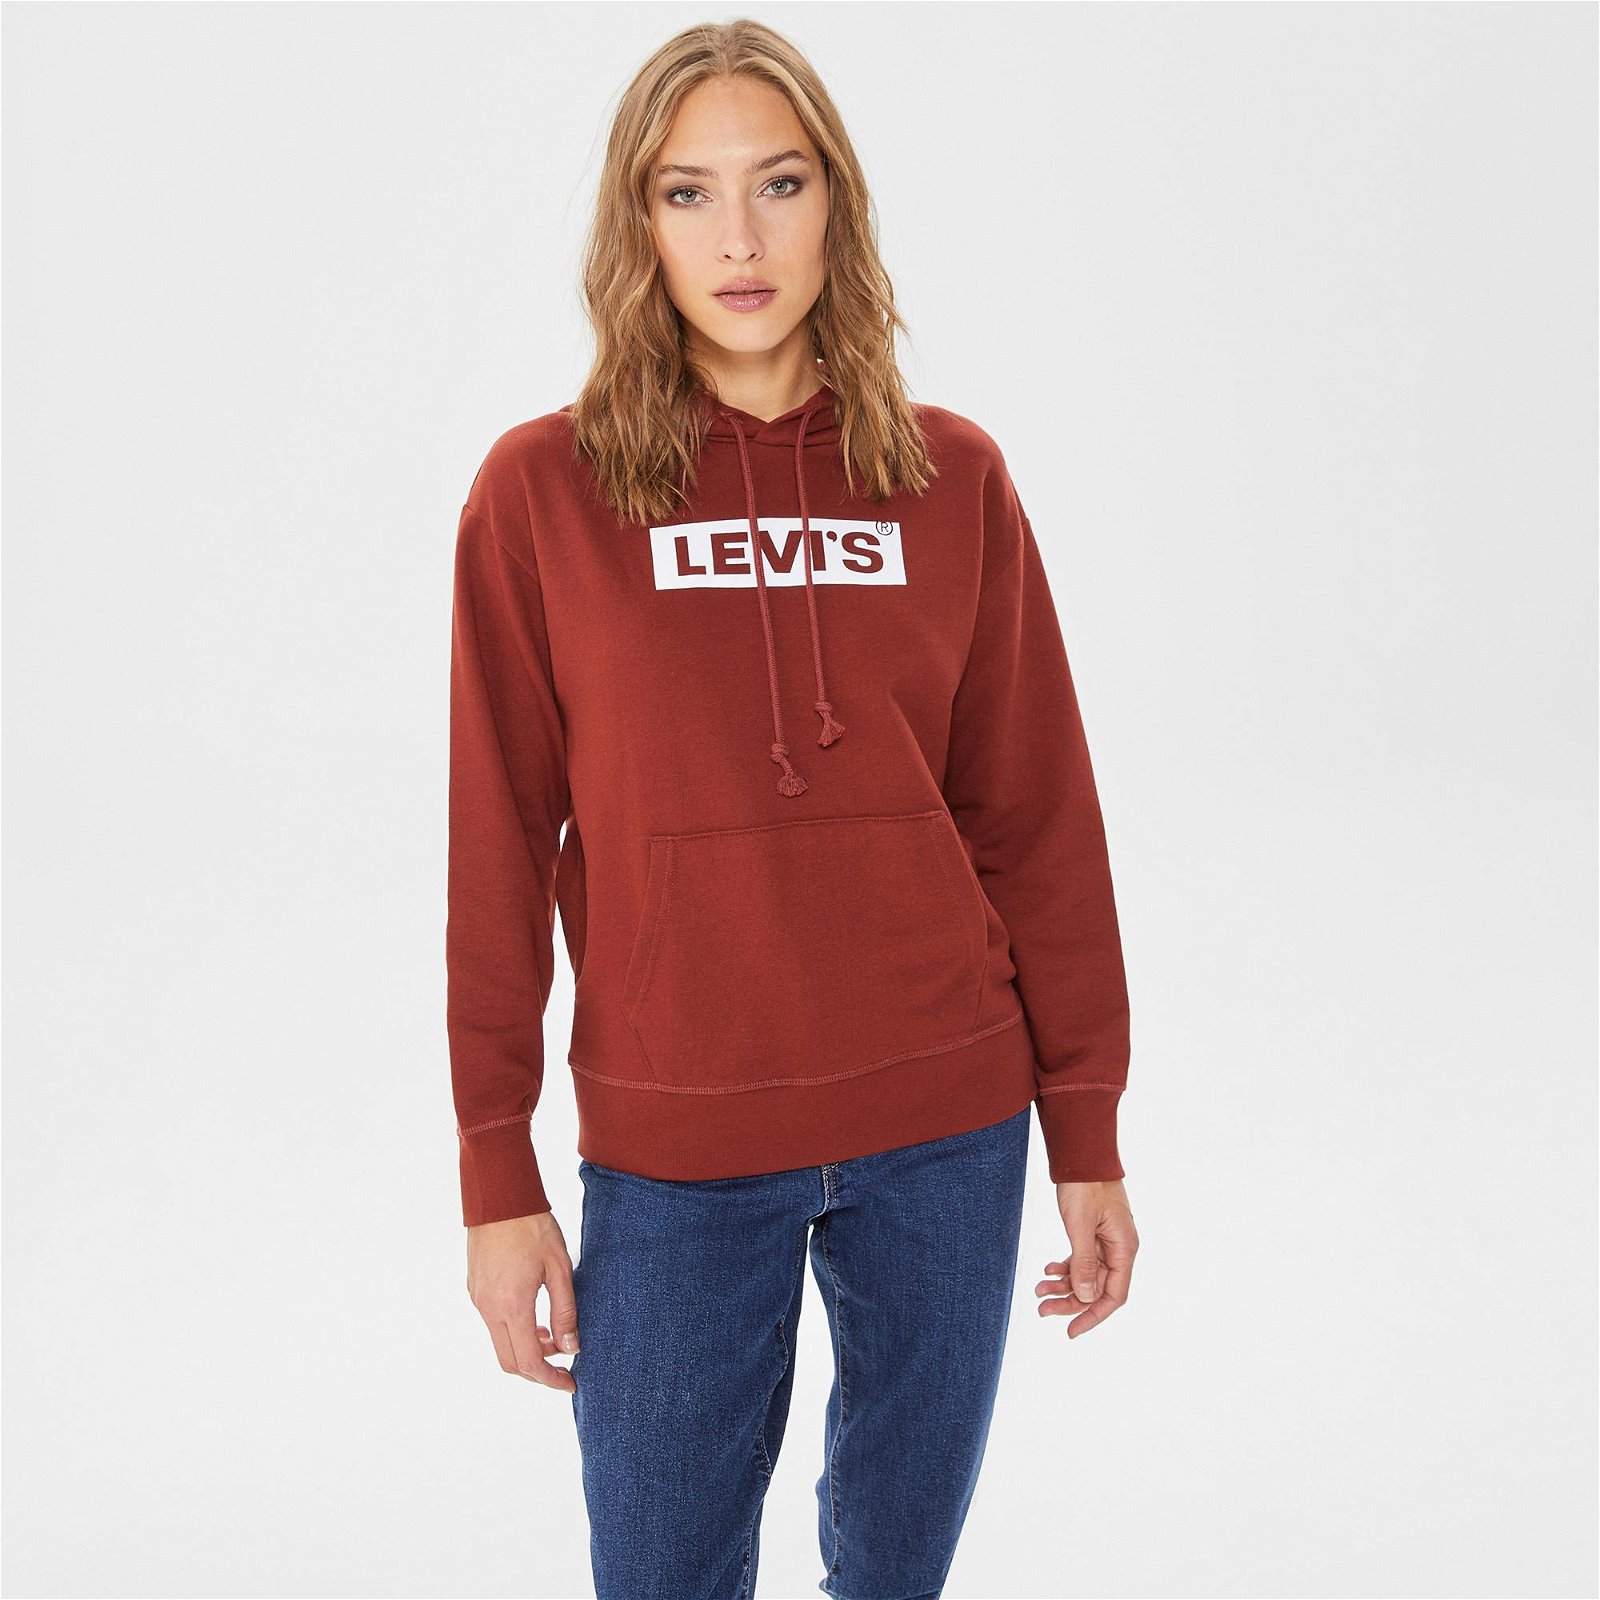 Levi's Graphic Standard Seasonal Kadın Kırmızı Sweatshirt